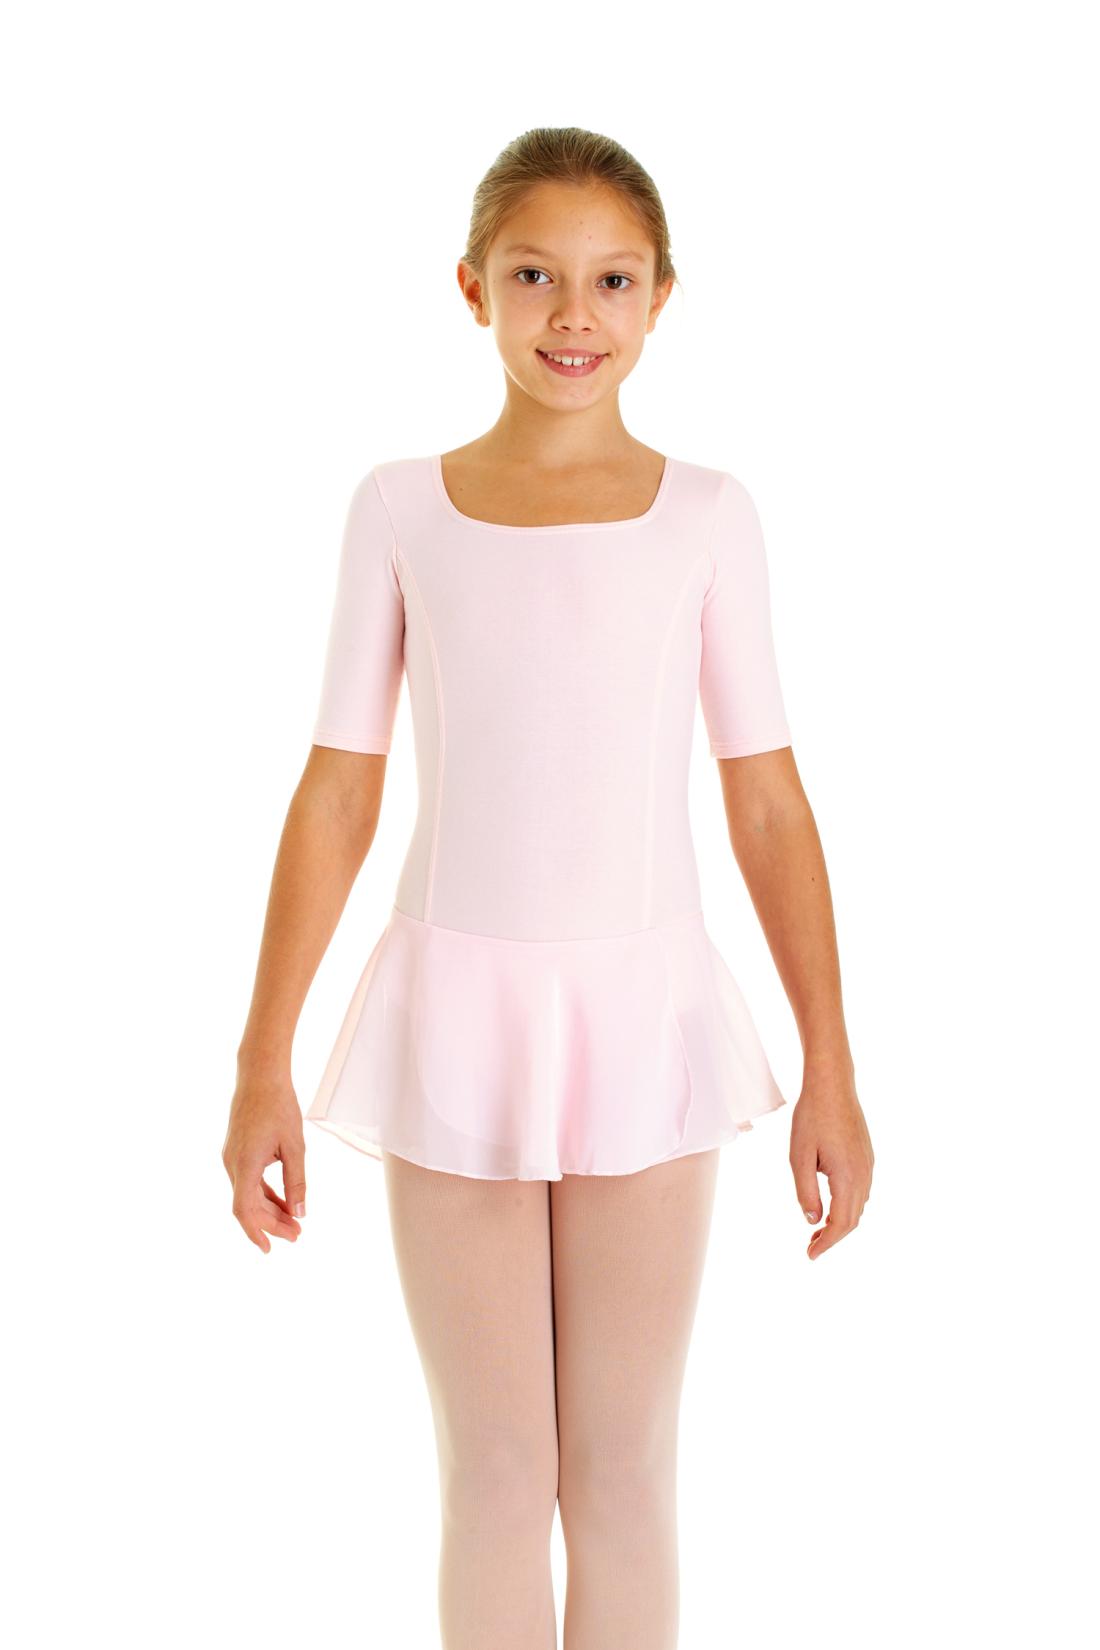 Short sleeve skirted ballet dress for girls in Meryl fabric Intermezzo dance